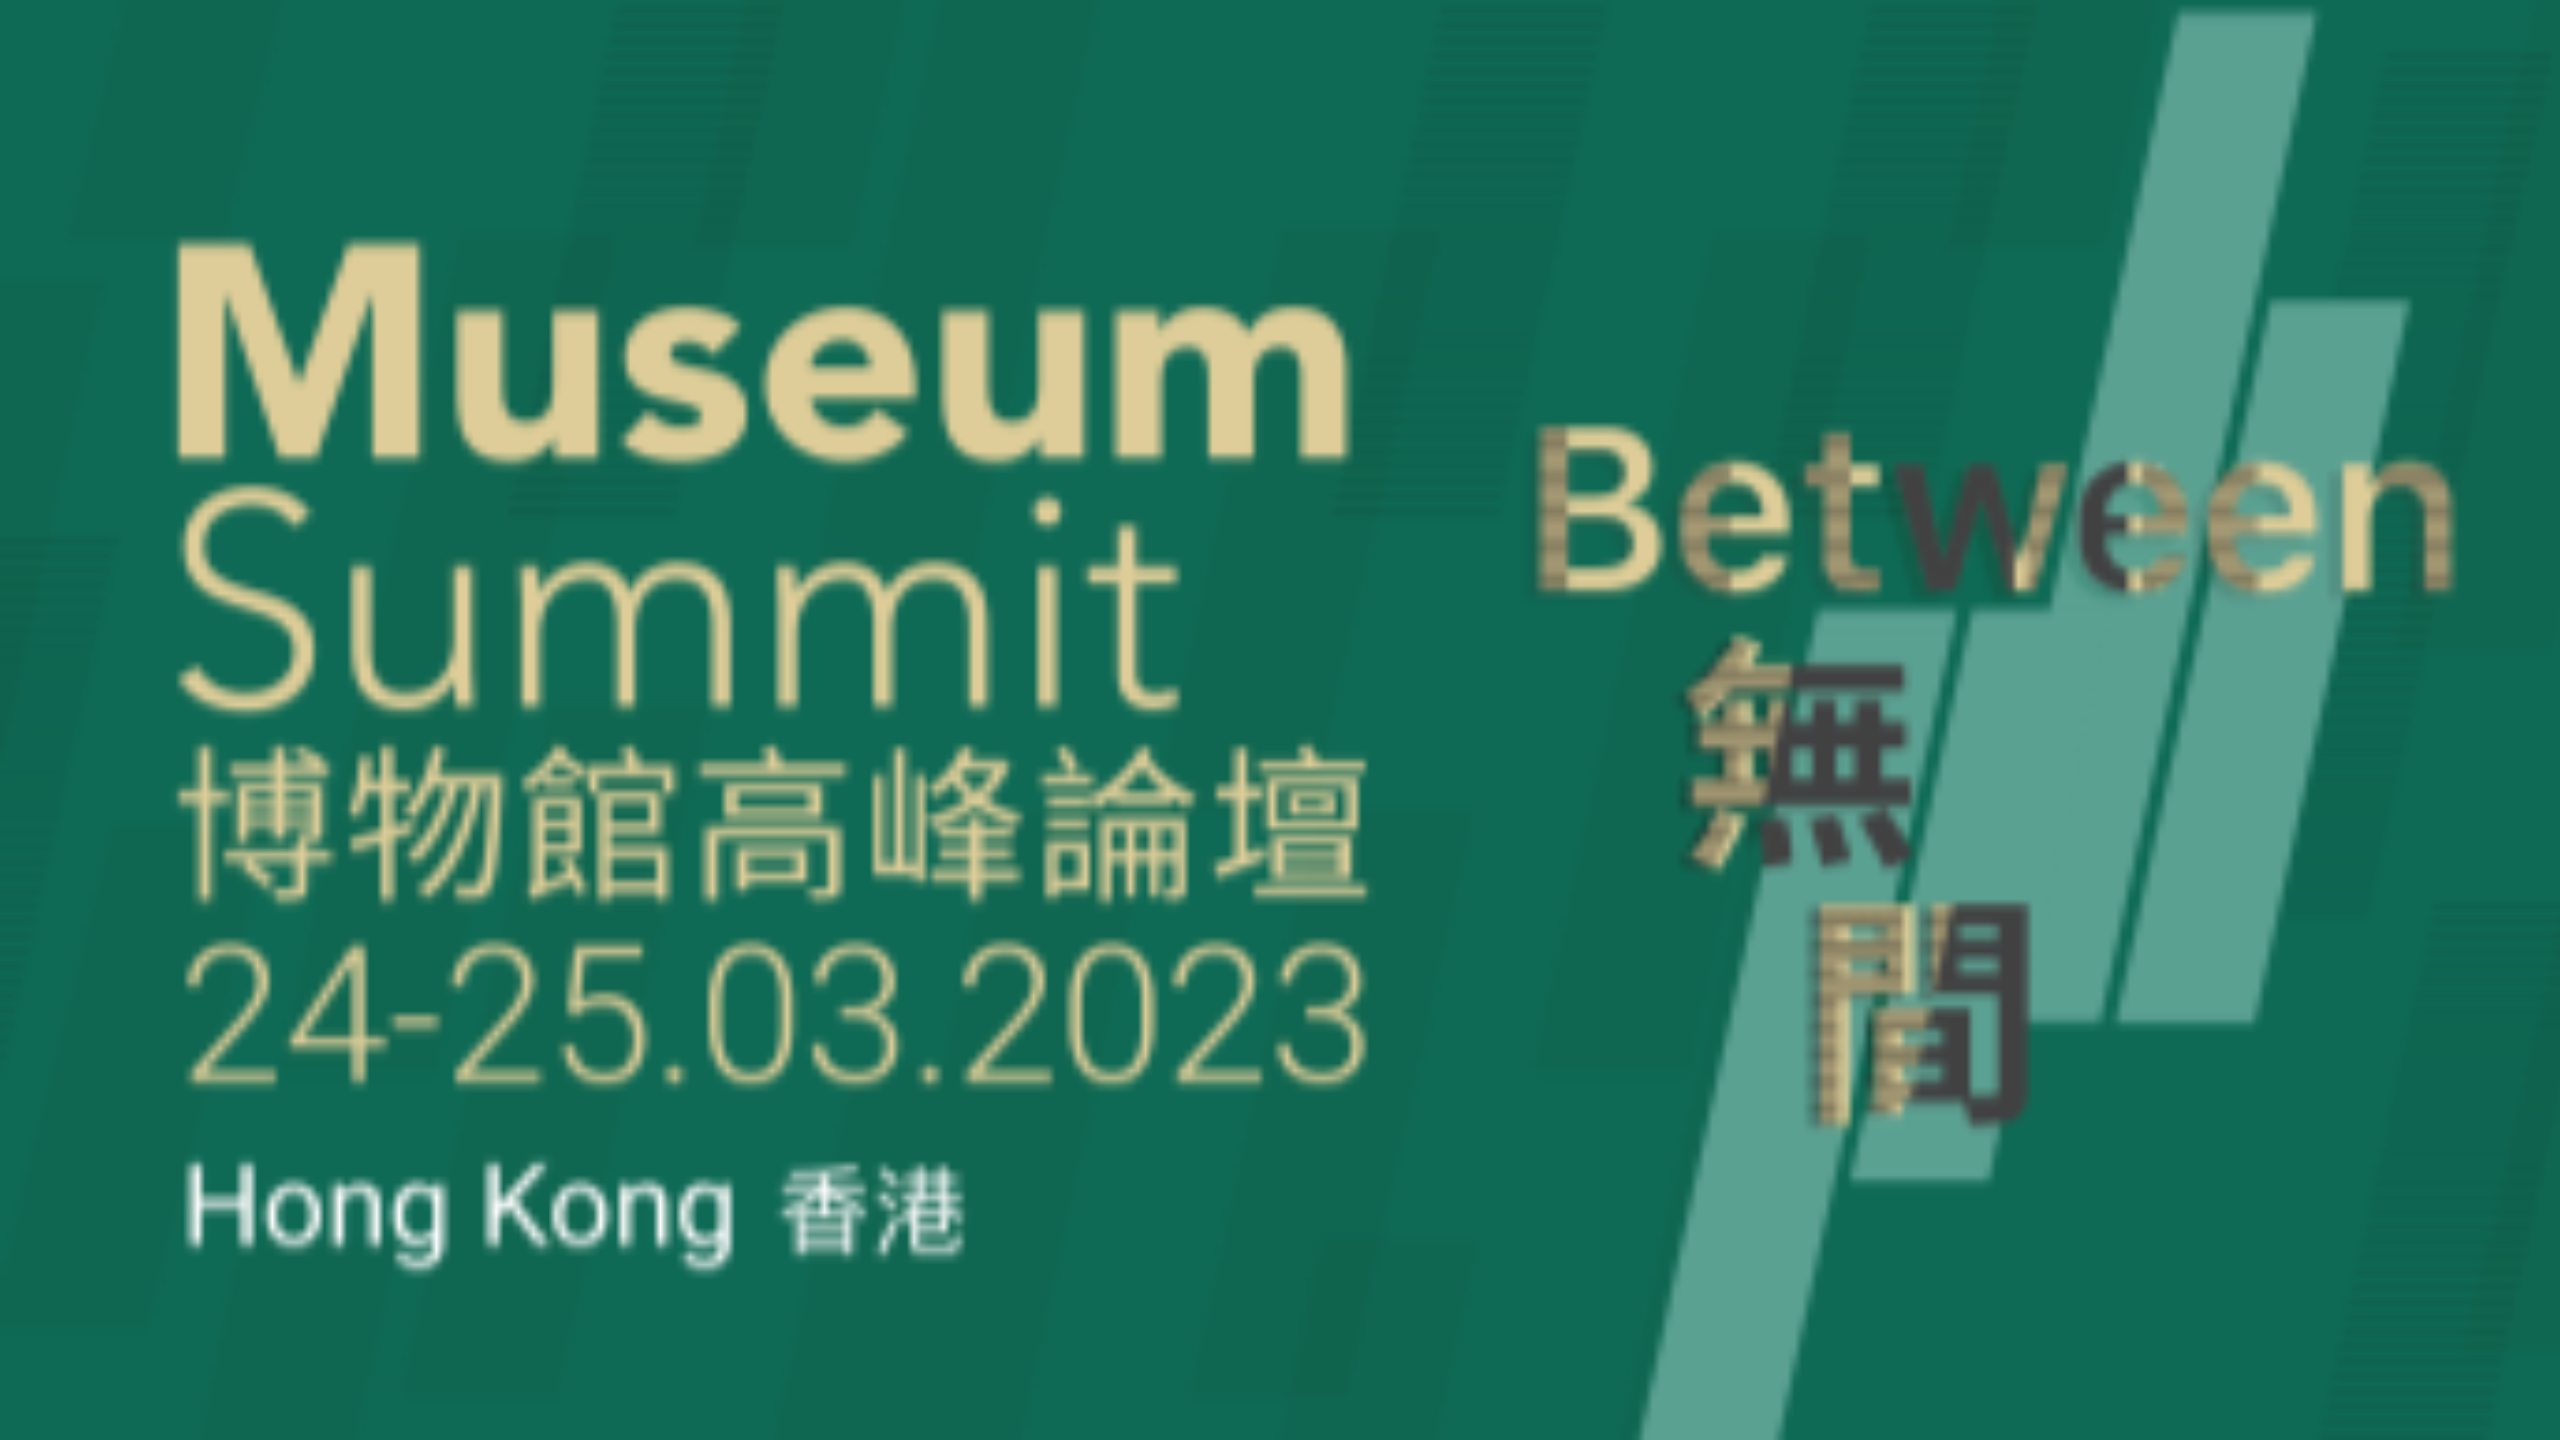 Eike Schmidt, direttore degli Uffizi, è al Museum Summit ad Hong Kong. Il suo discorso in apertura dell’evento